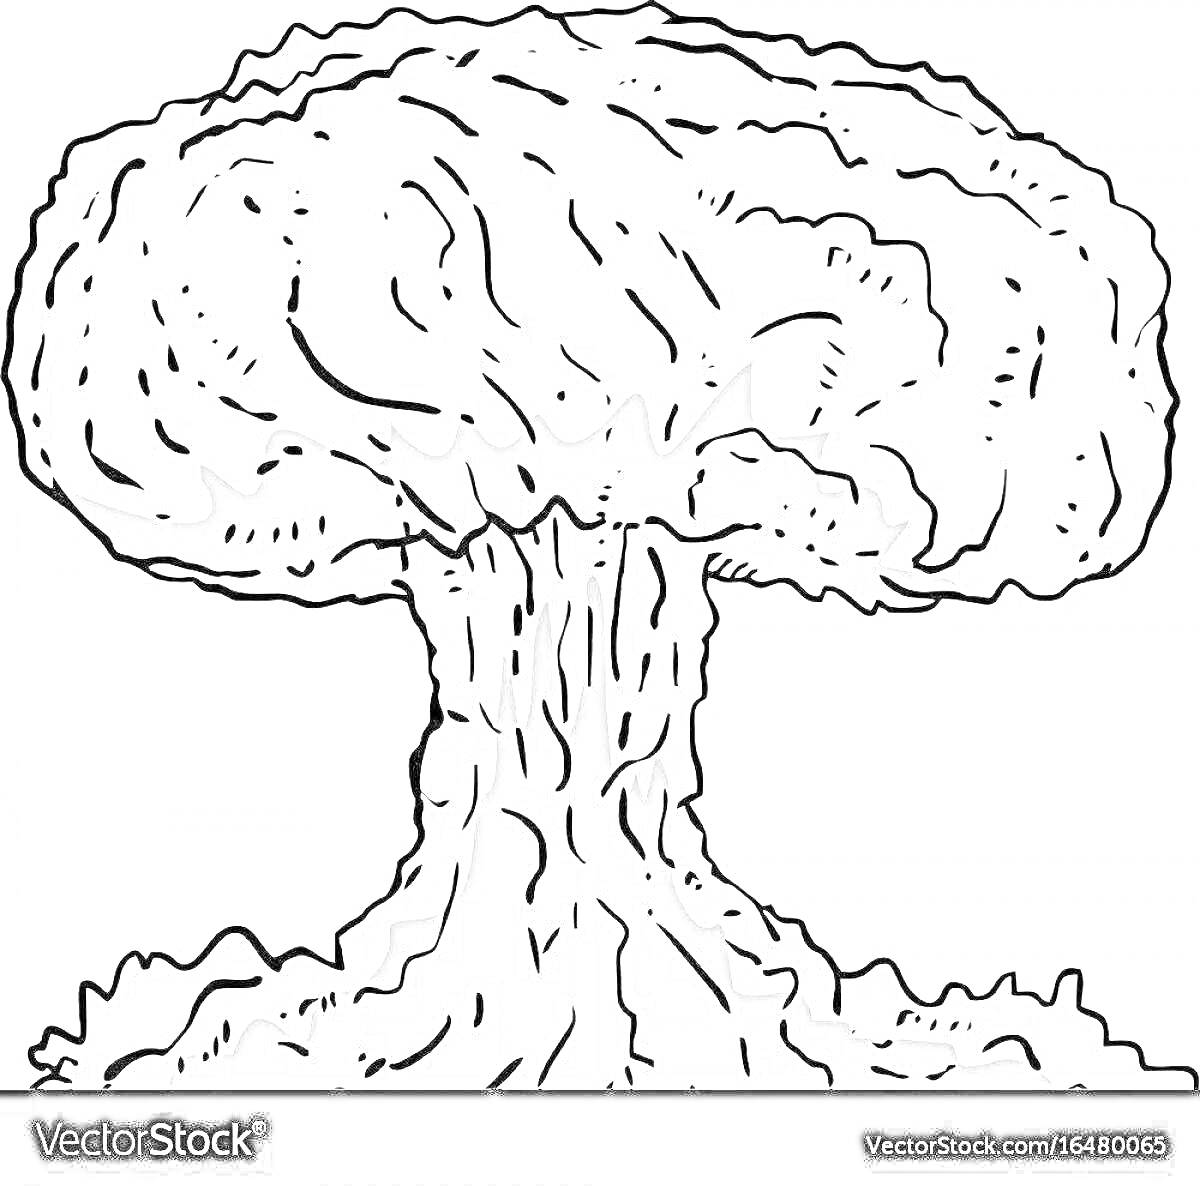 Раскраска Ядерный взрыв в виде грибообразного облака